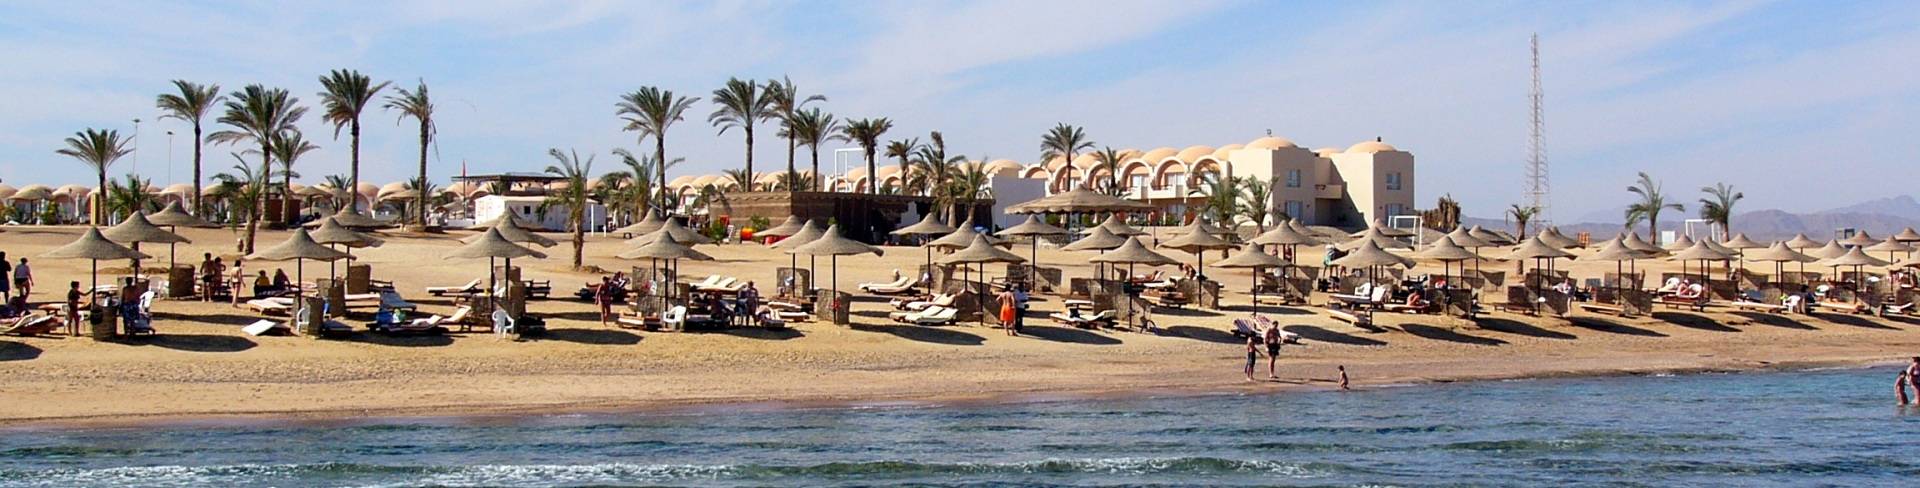 Марса Алам - курорт на Красном море в Египте